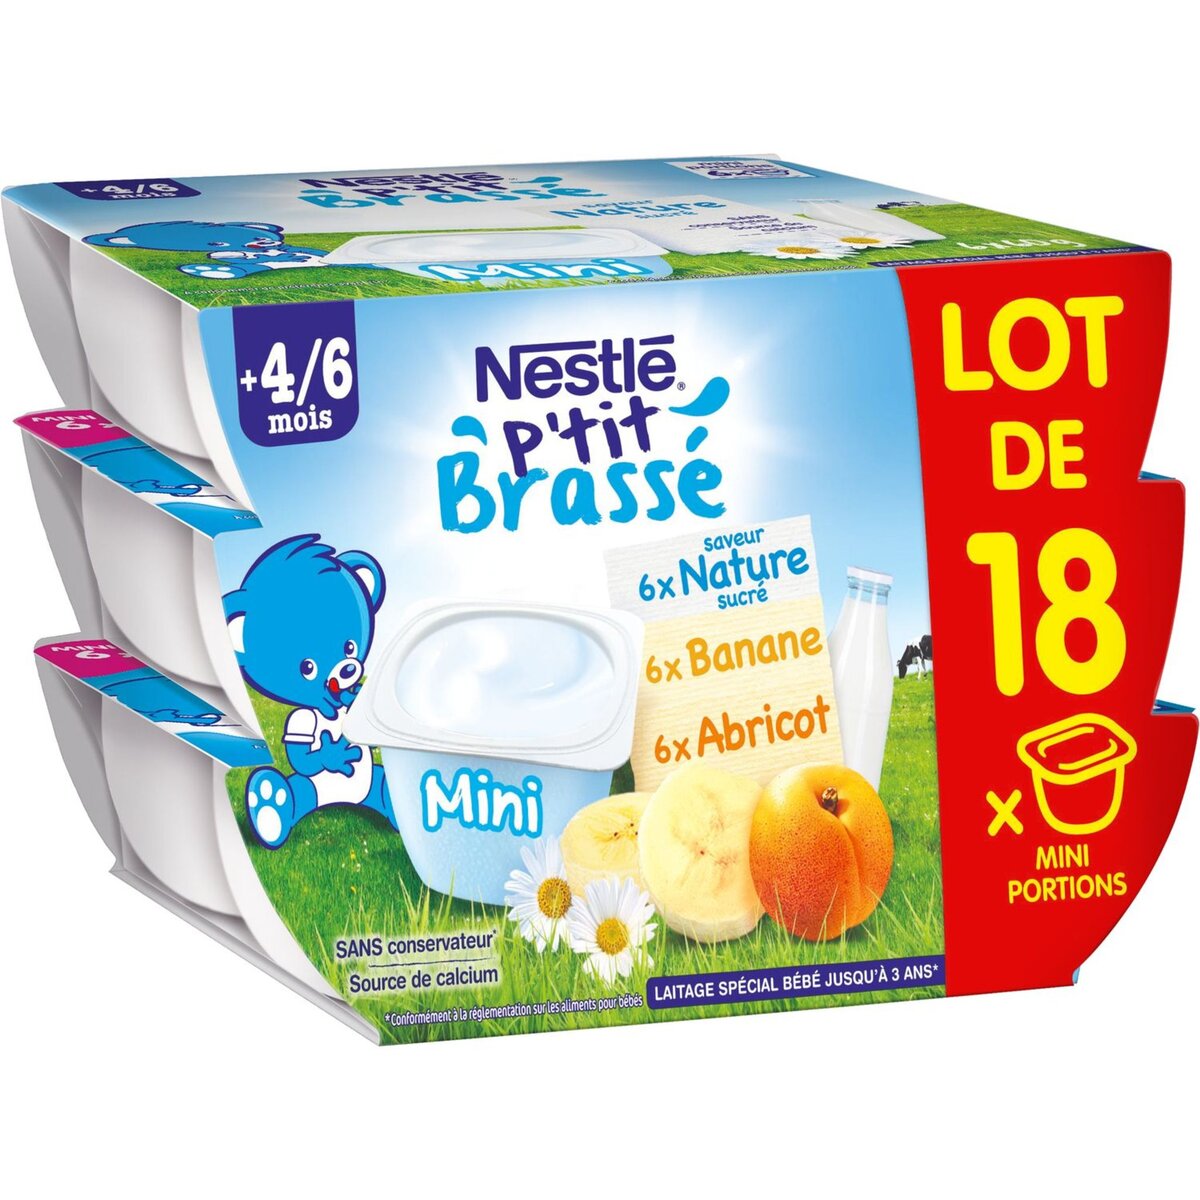 NESTLE Nestlé ptit brassé nature abricot banane 18x60g dès 4/6mois